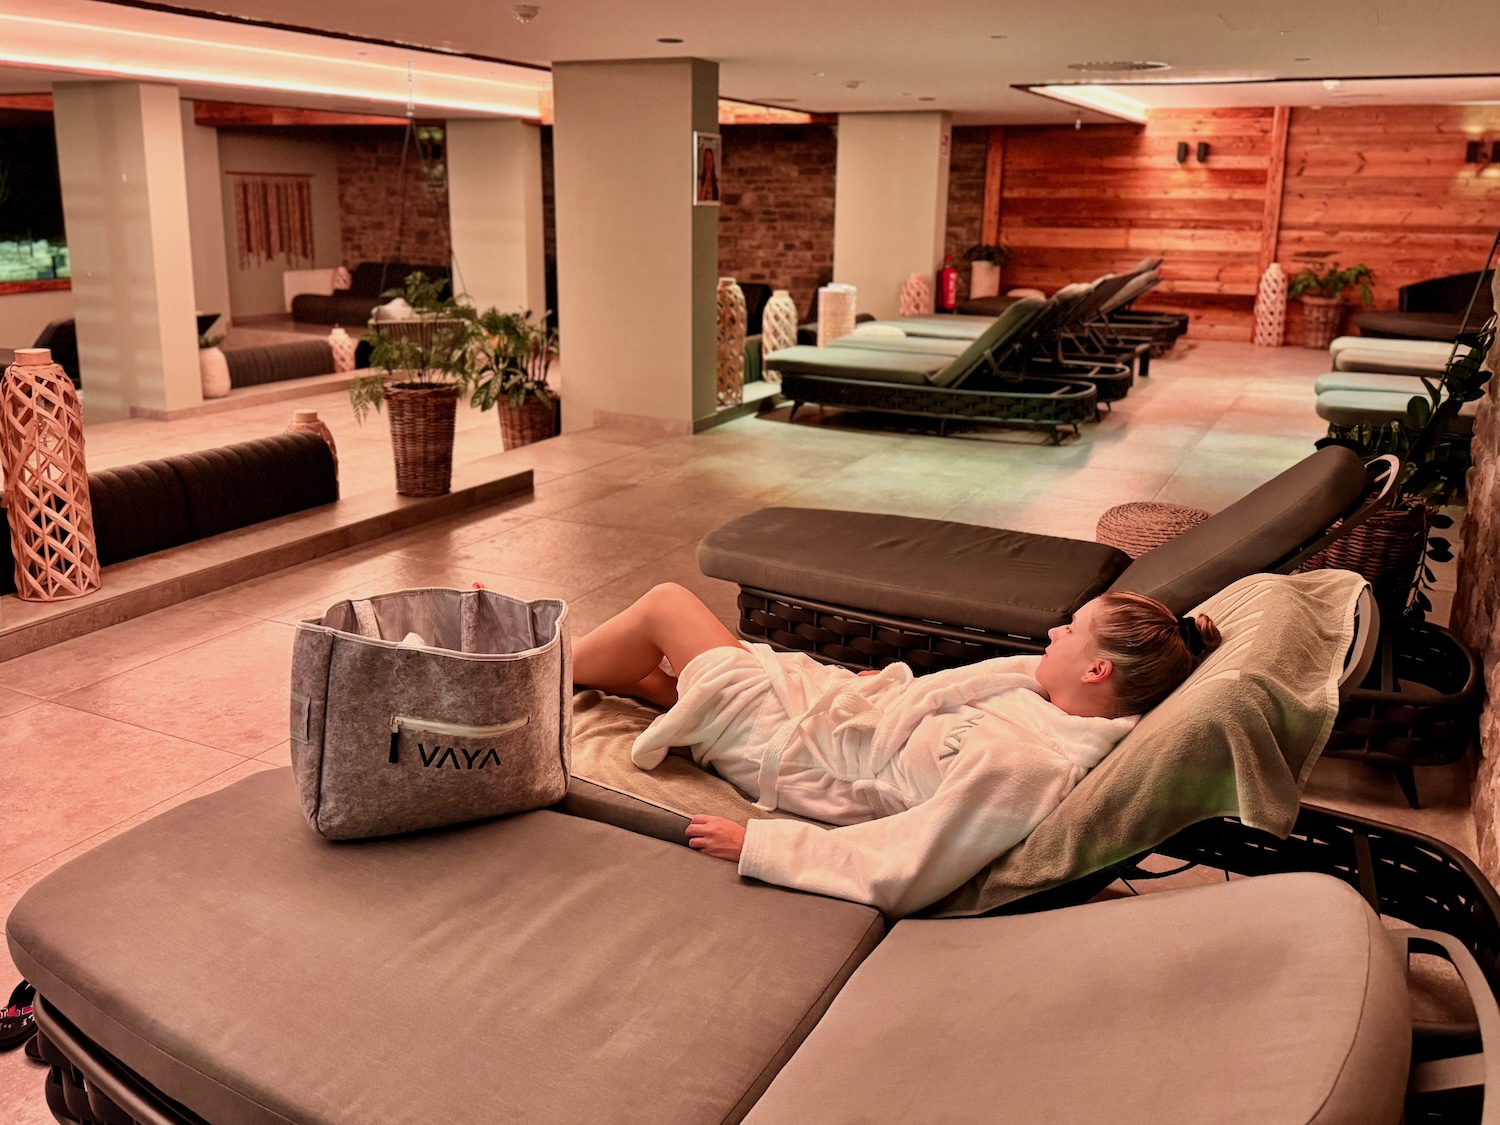 Notre point fort de l'hôtel : l'espace bien-être avec sauna et piscine. Photo: Sascha Tegtmeyer vacances au ski à Fieberbrunn vacances d'hiver rapport de voyage expérience rapport d'expériences